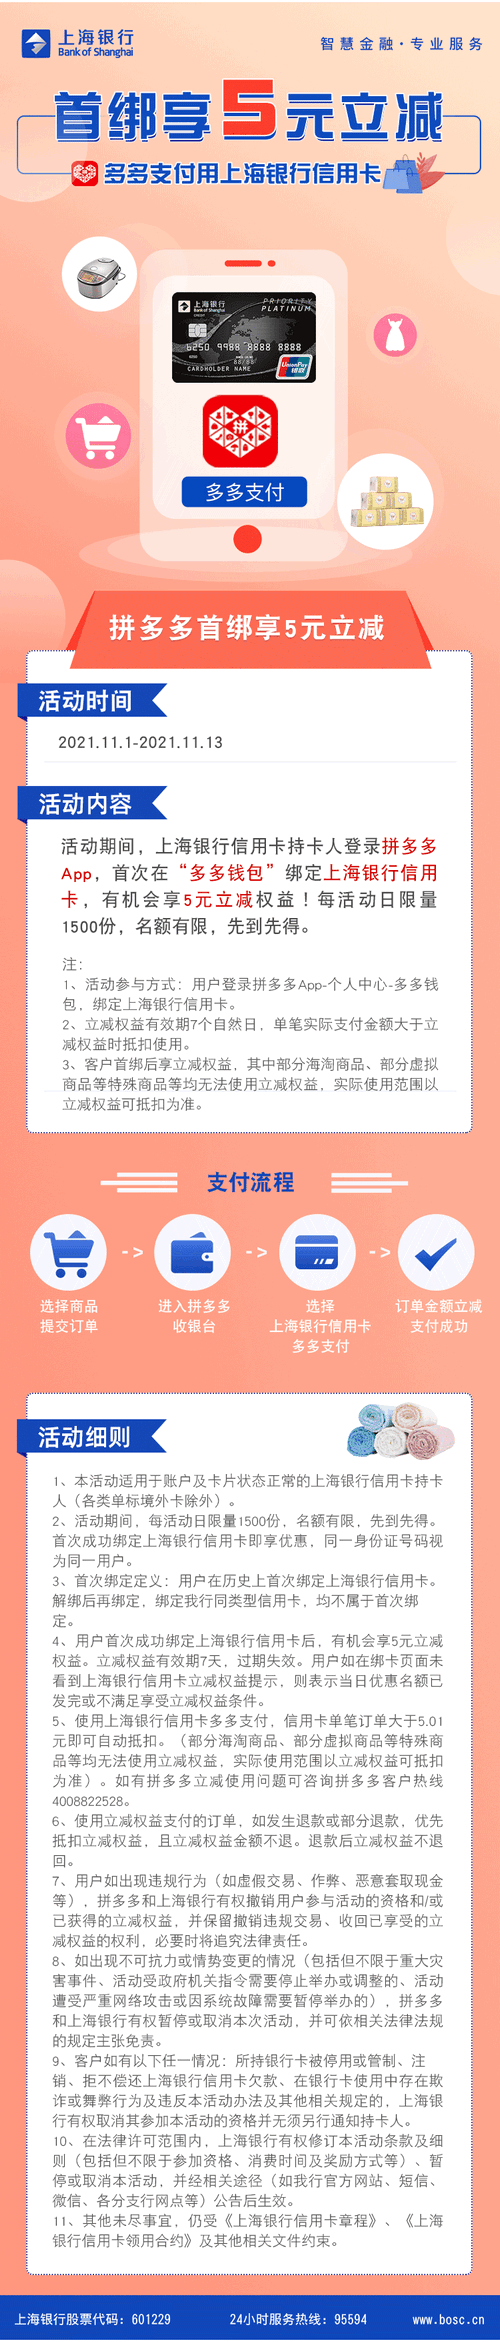 上海银行信用卡【移动支付】拼多多首绑享5元立减优惠！